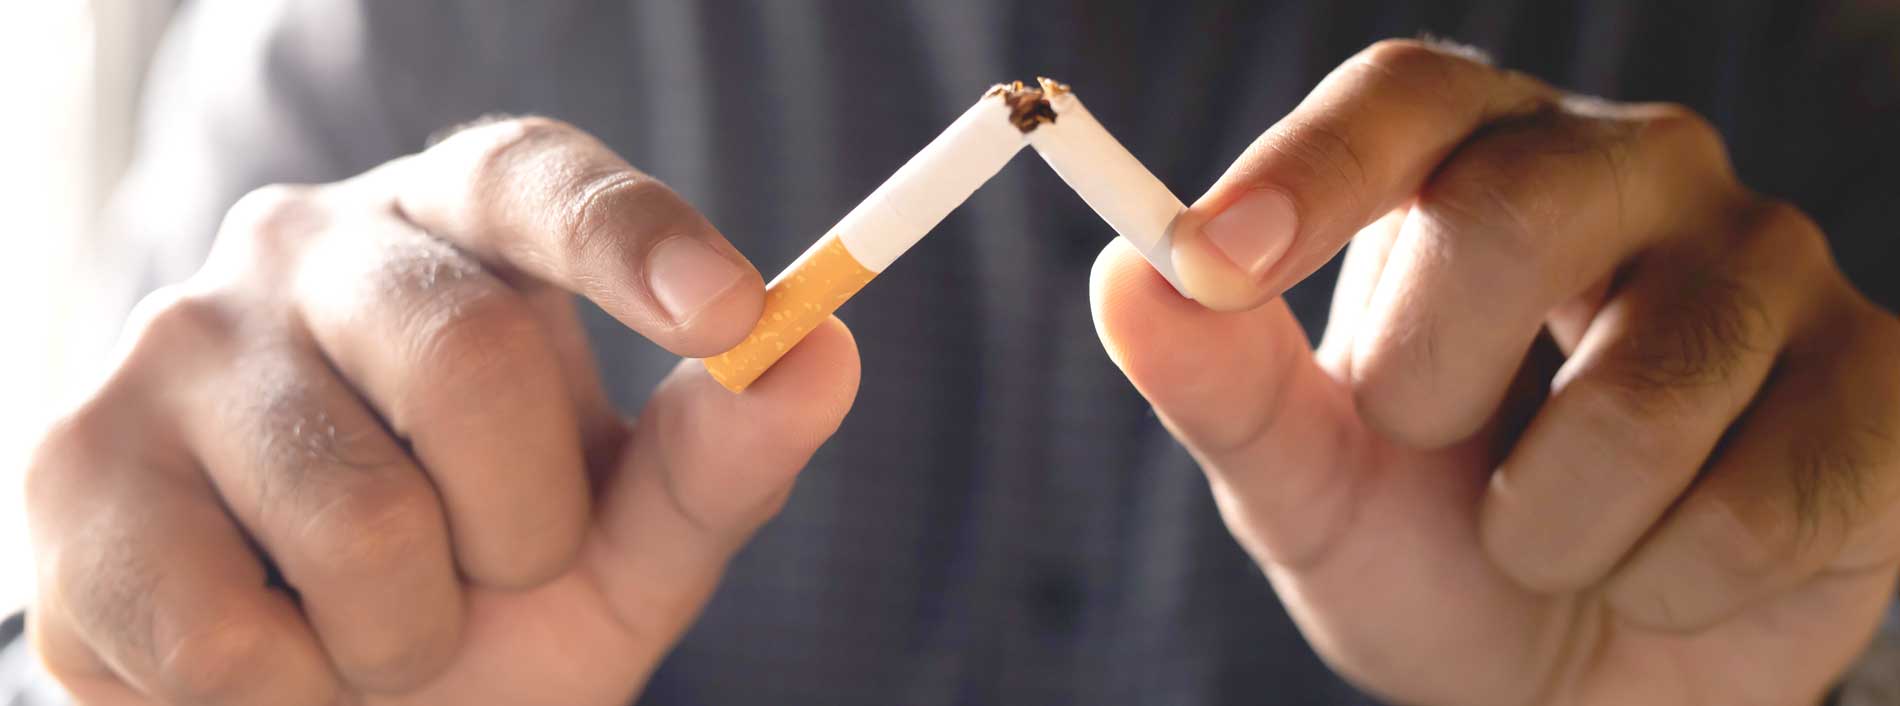 Rauchen: Nach Schlaganfall besonders gefährlich